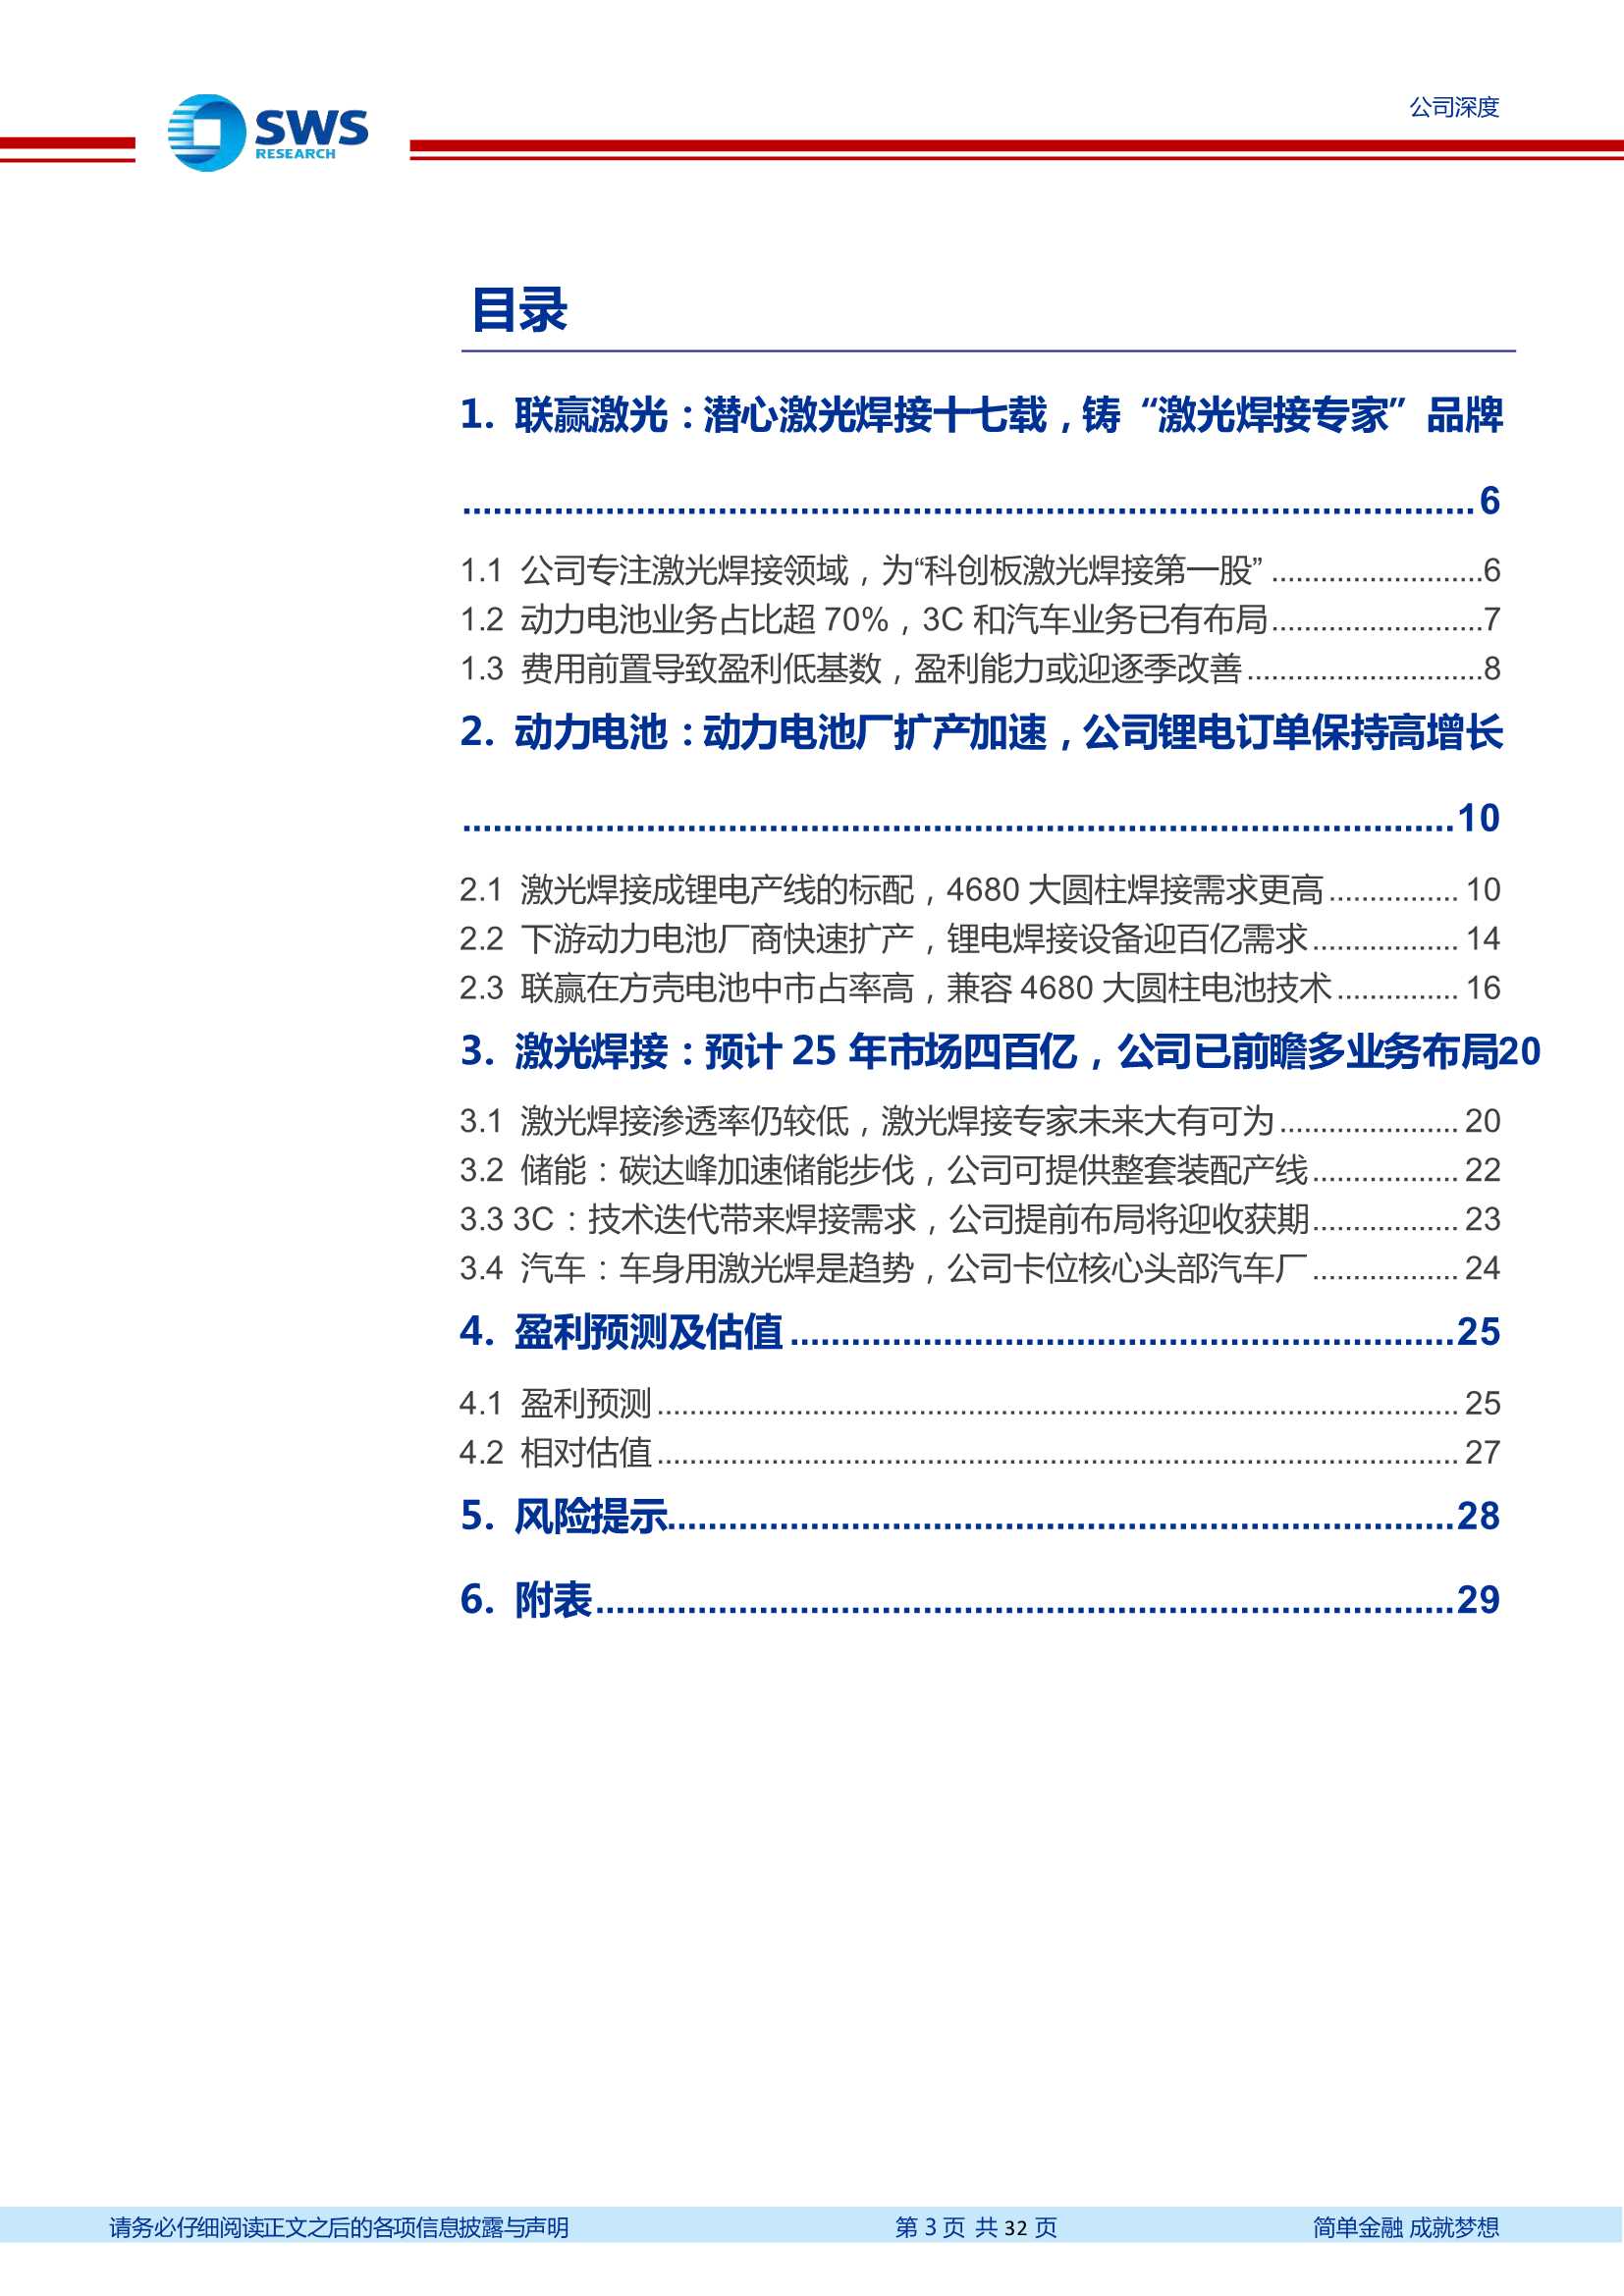 申万宏源-联赢激光-688518-激光焊接领域专家，锂电助力业绩高增-20220314-32页